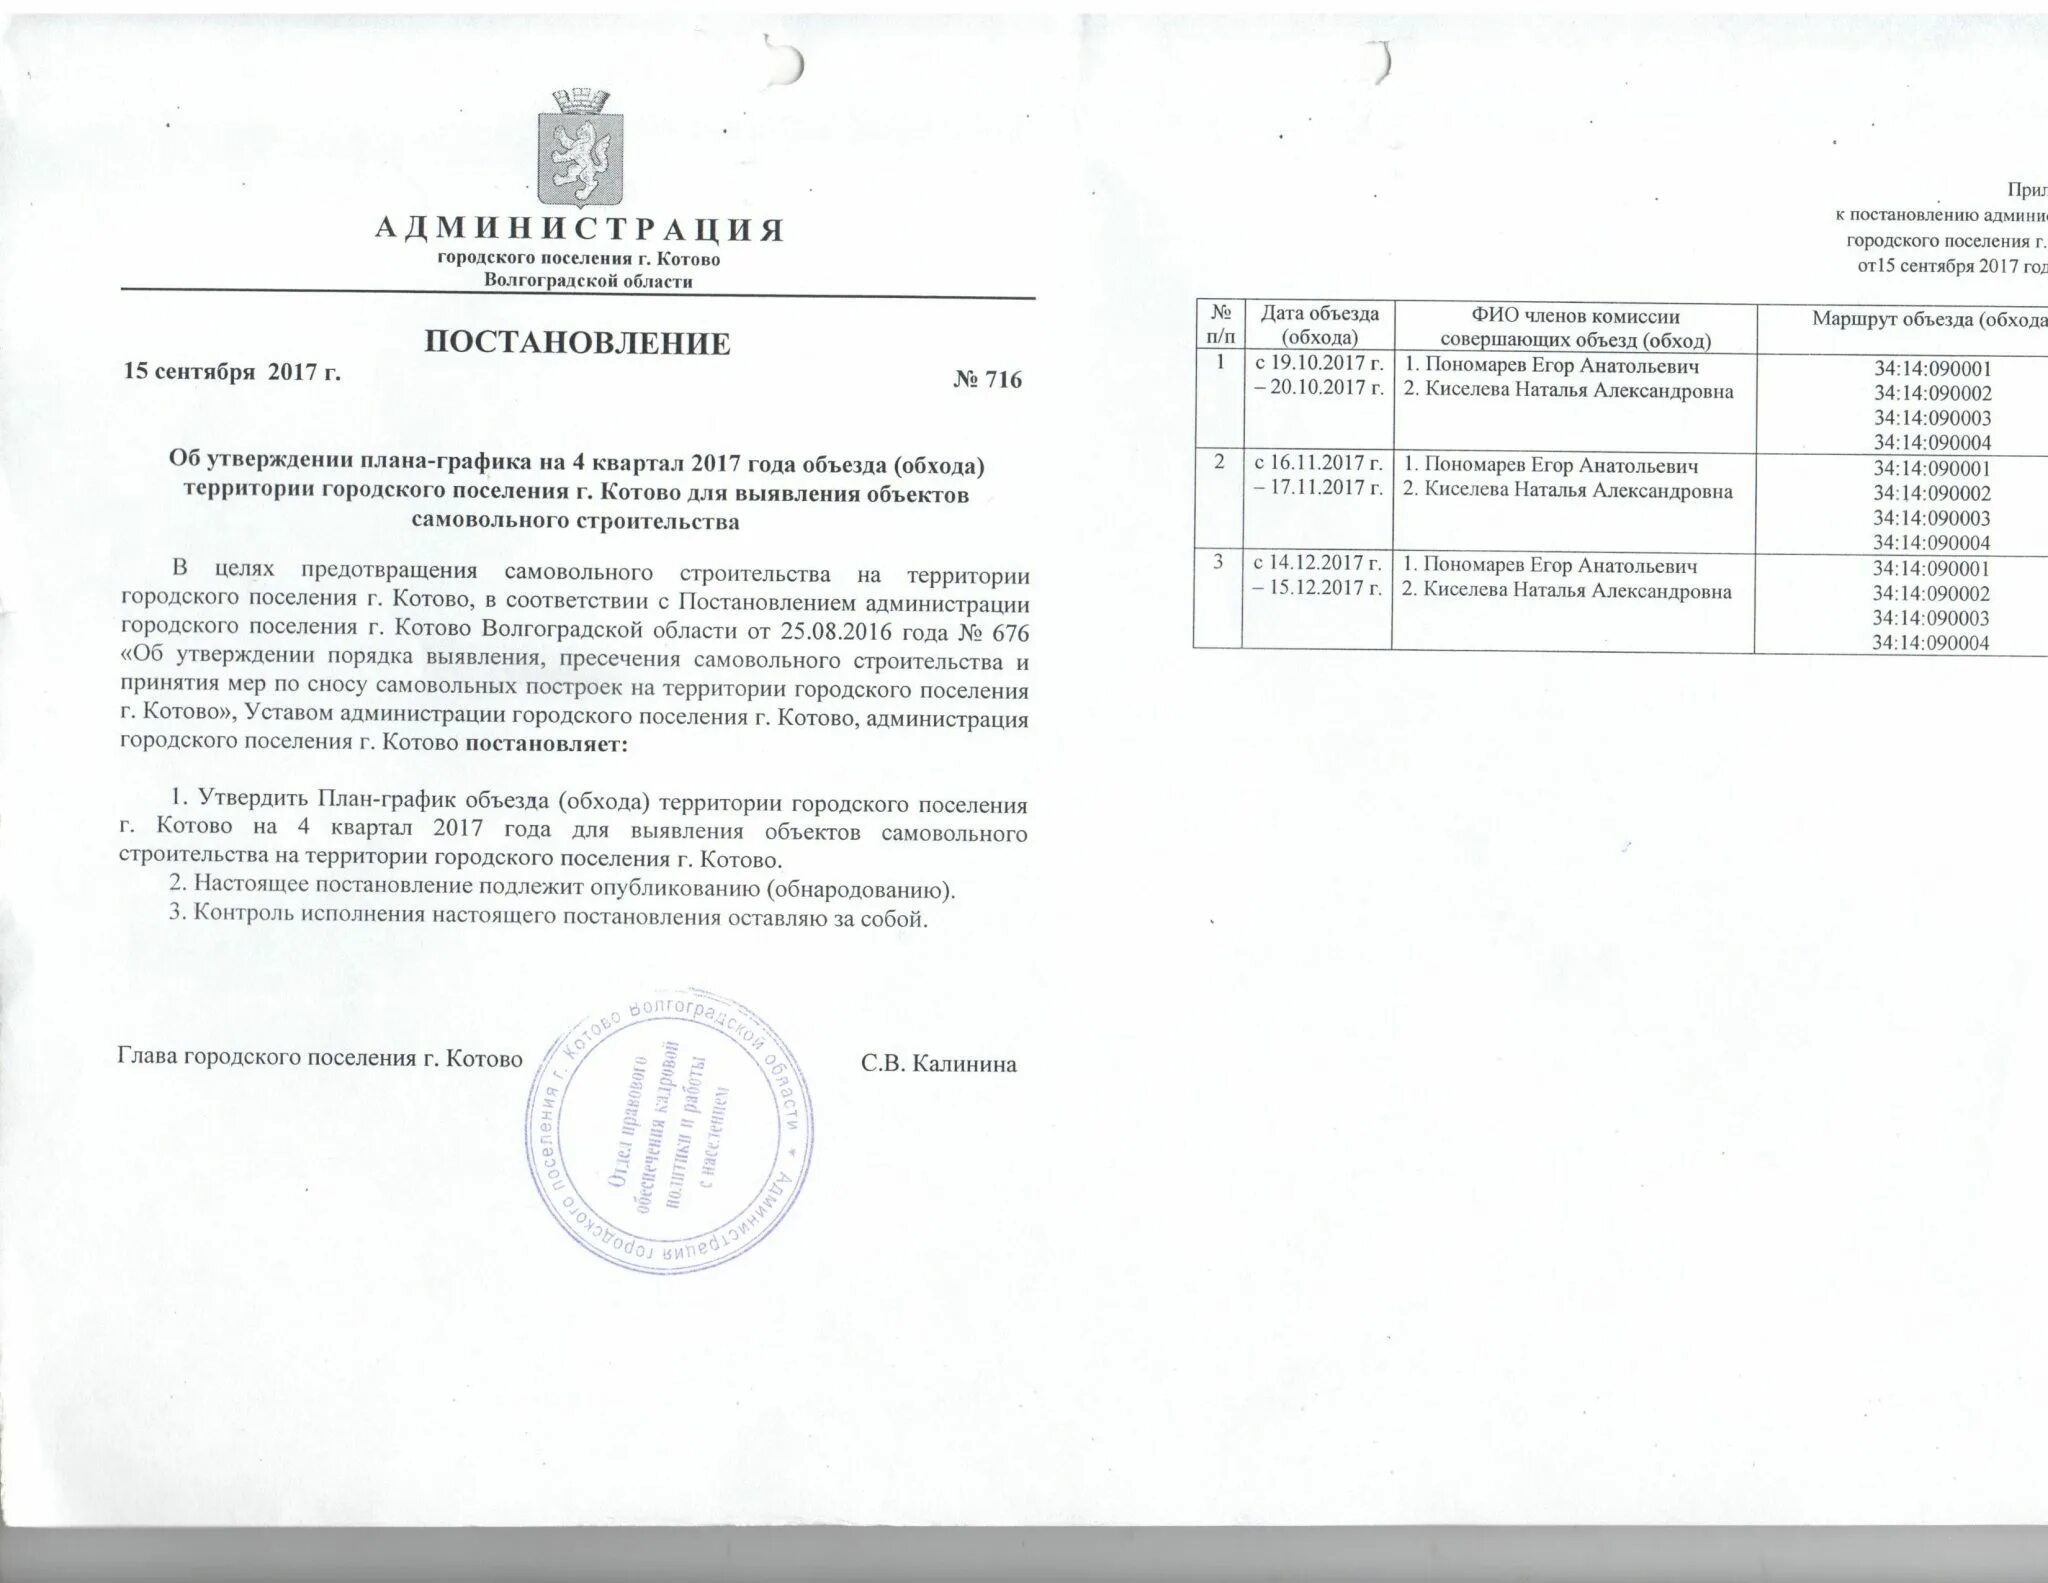 Постановление администрации ростовской области